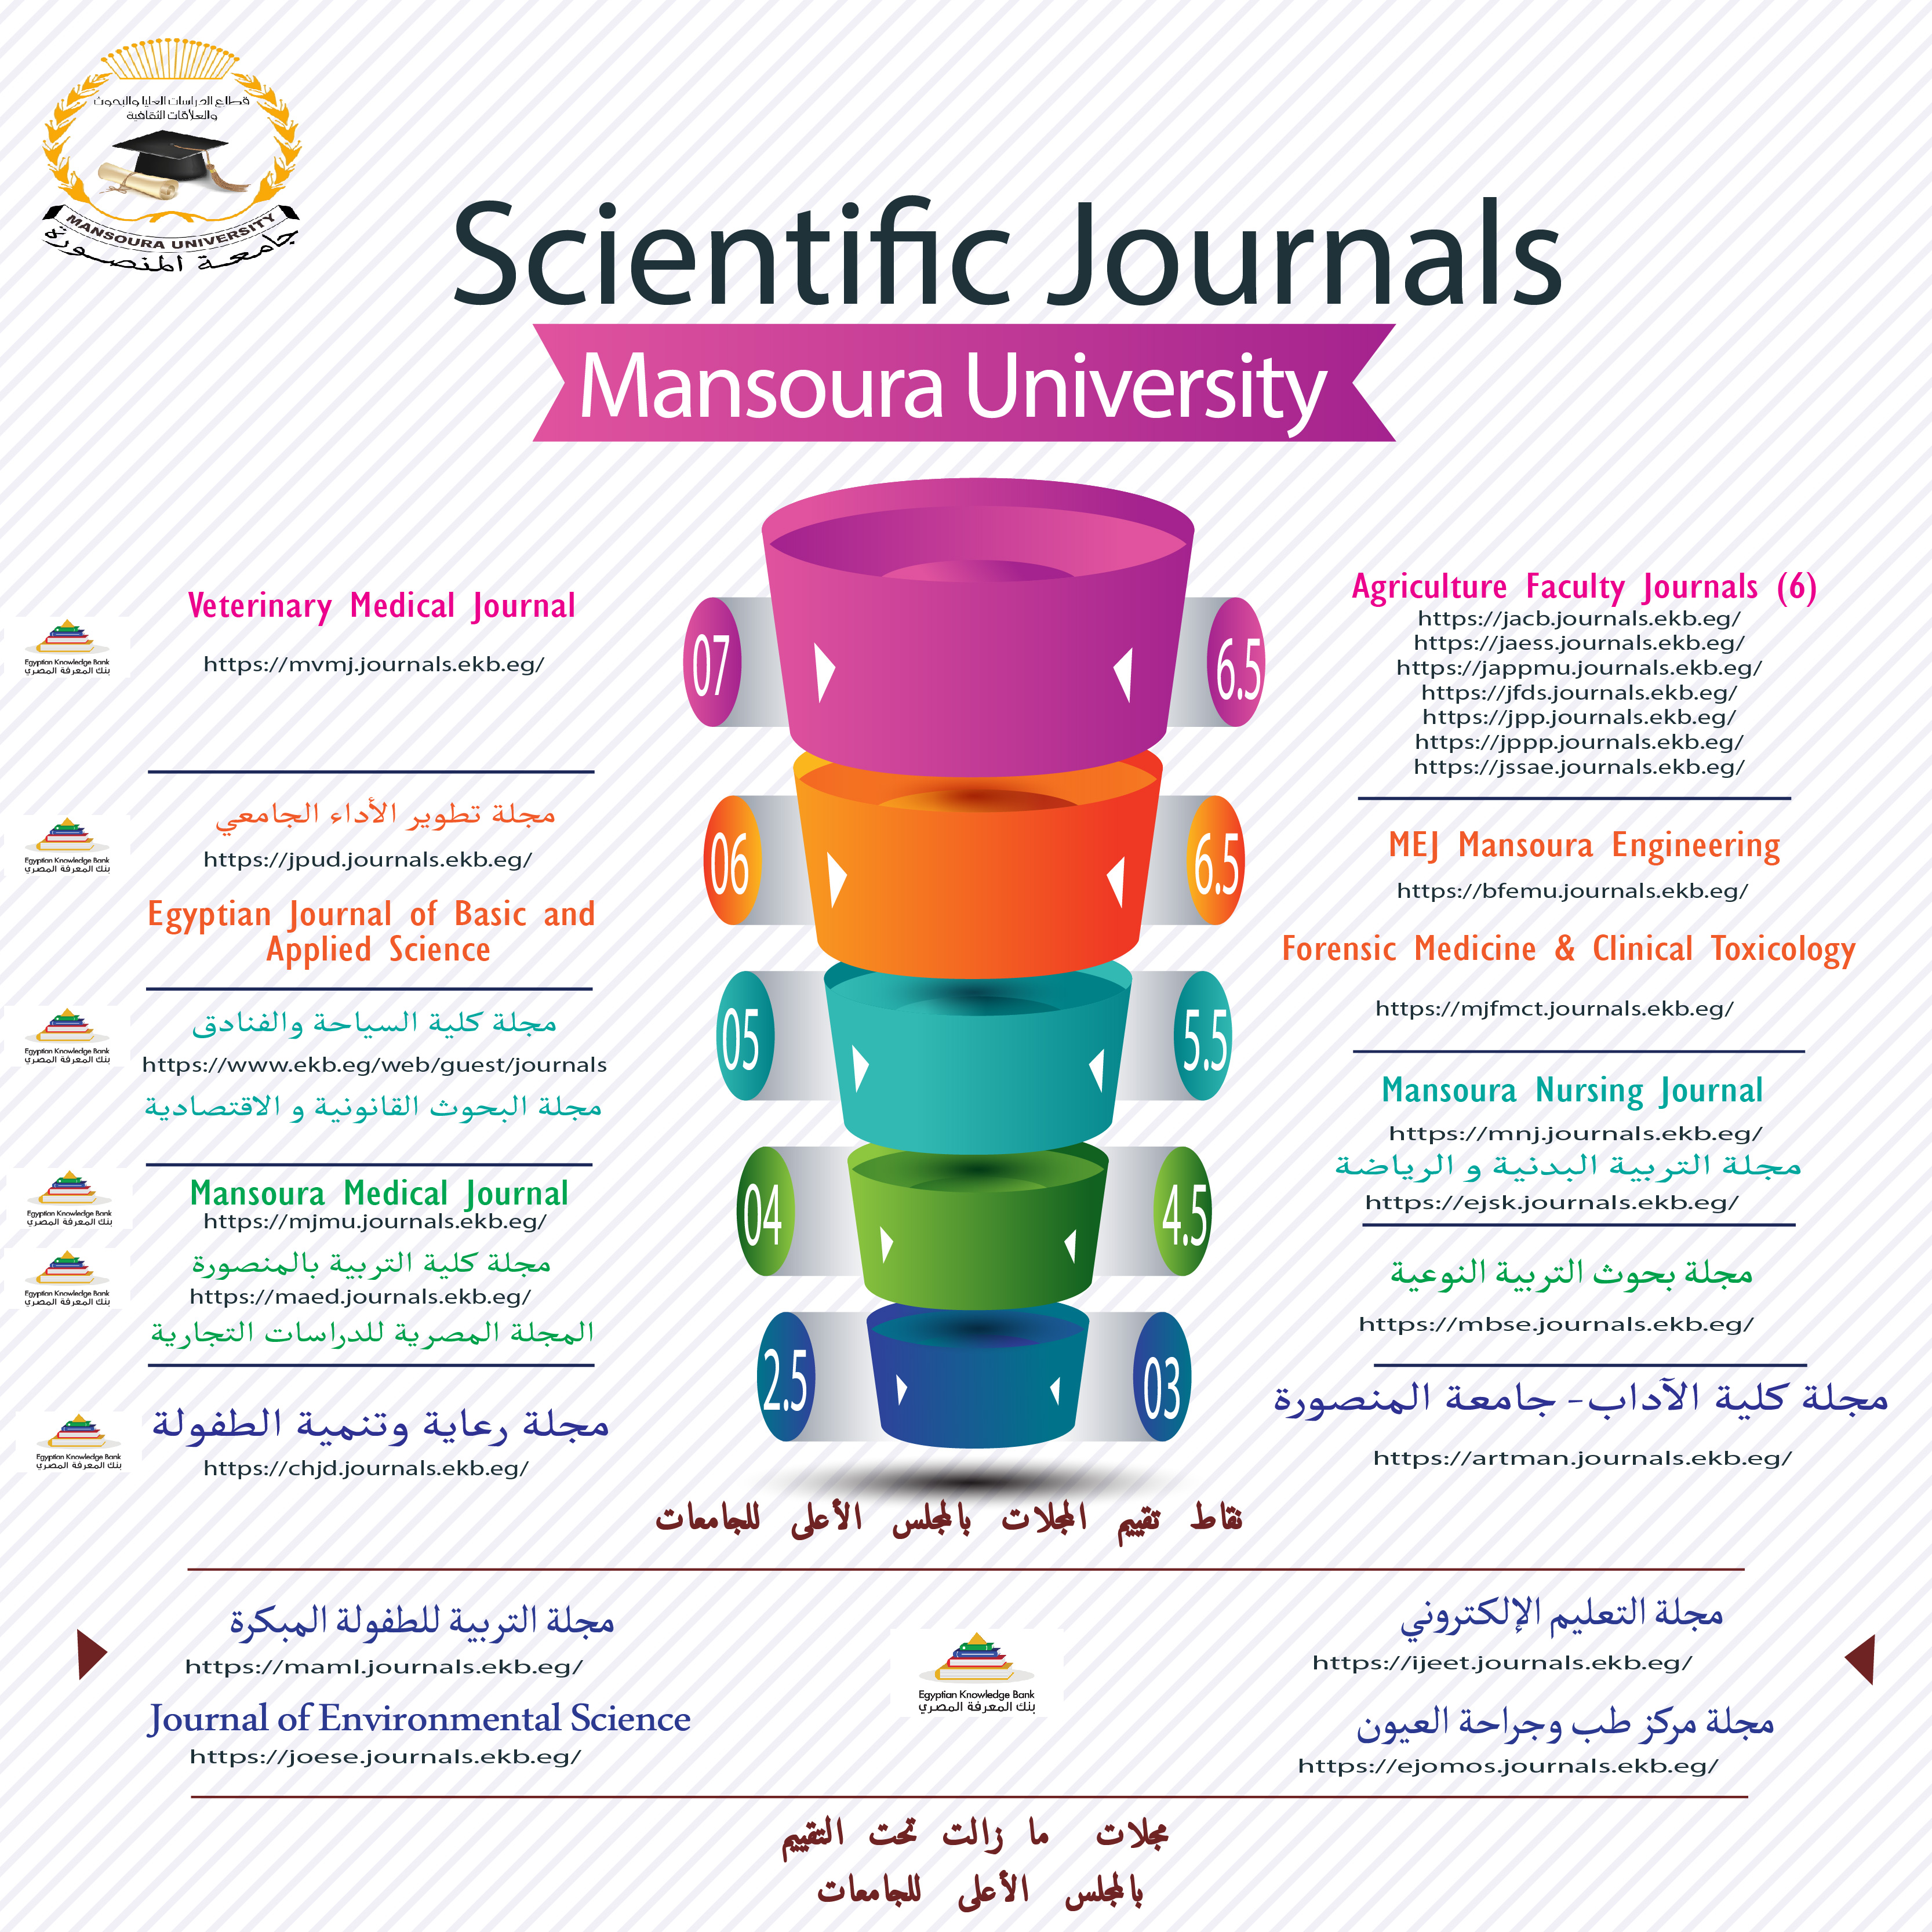 تقييم المجلات العلمية بجامعة المنصورة الصادرة من المجلس الأعلى للجامعات